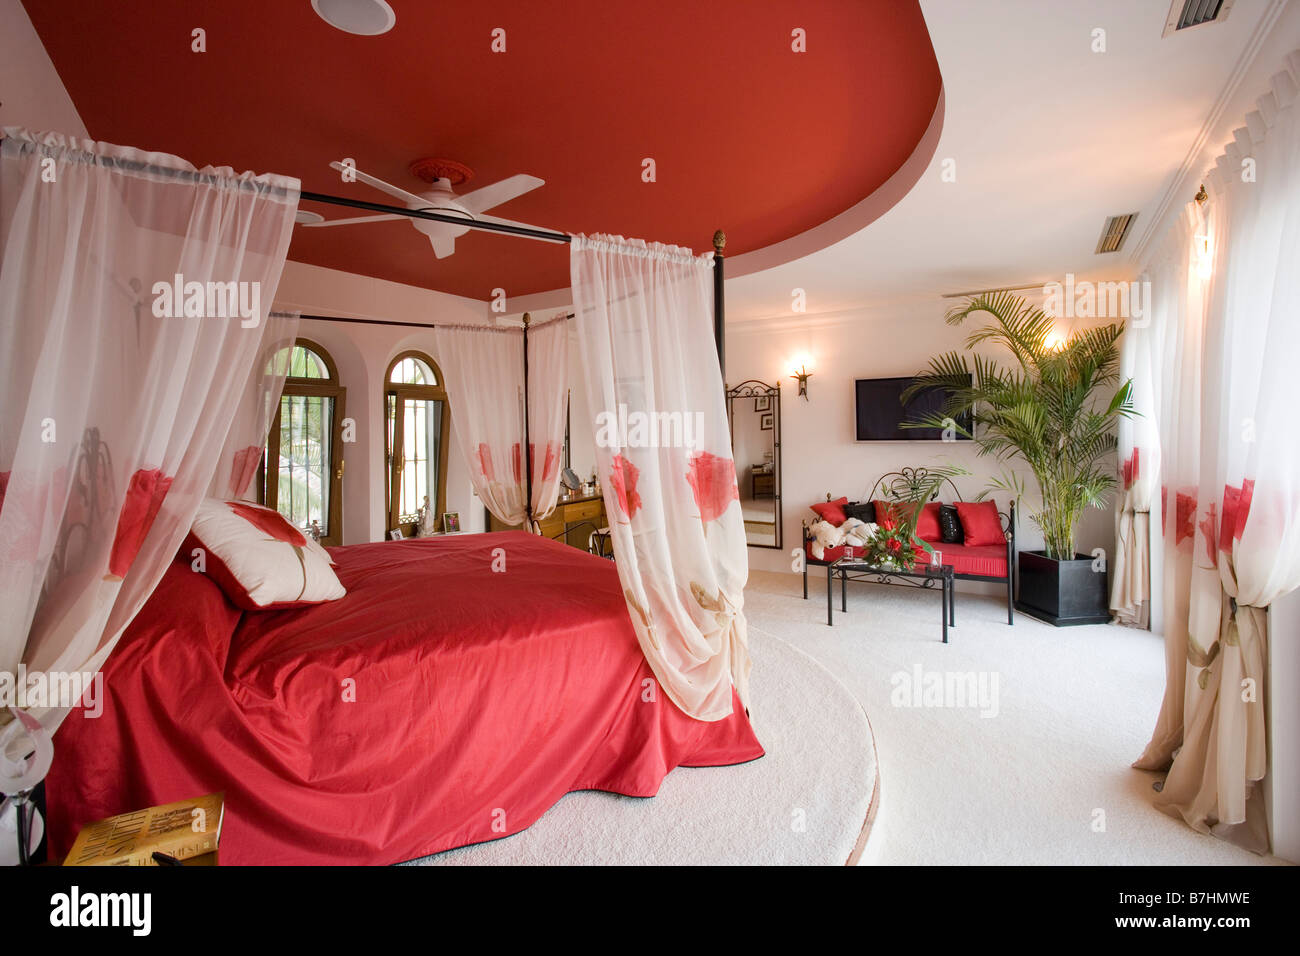 Plafond rouge au-dessus de lit avec des rideaux voile blanc et rouge linge  de chambre avec tapis blanc Photo Stock - Alamy